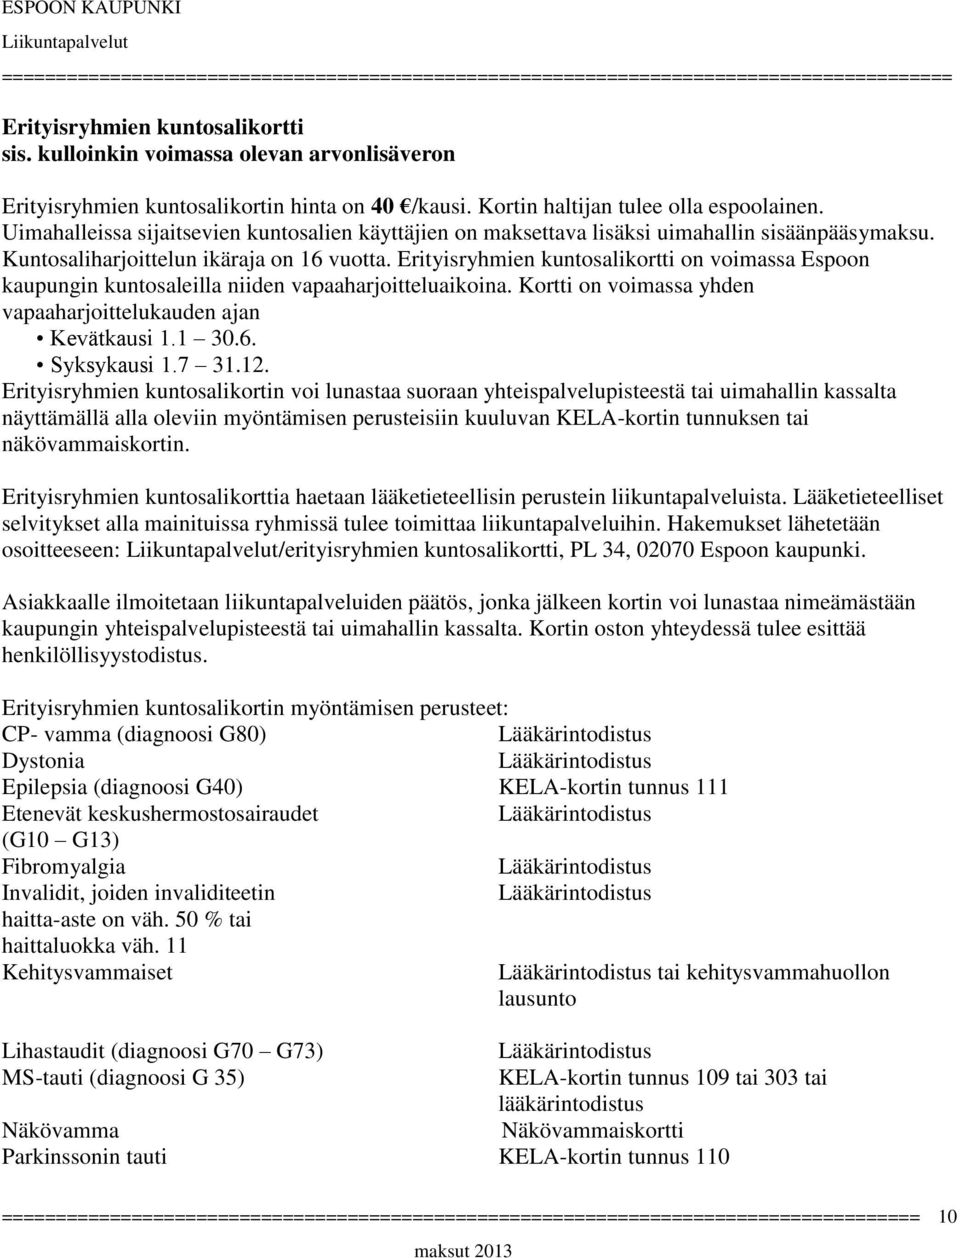 Erityisryhmien kuntosalikortti on voimassa Espoon kaupungin kuntosaleilla niiden vapaaharjoitteluaikoina. Kortti on voimassa yhden vapaaharjoittelukauden ajan Kevätkausi 1.1 30.6. Syksykausi 1.7 31.